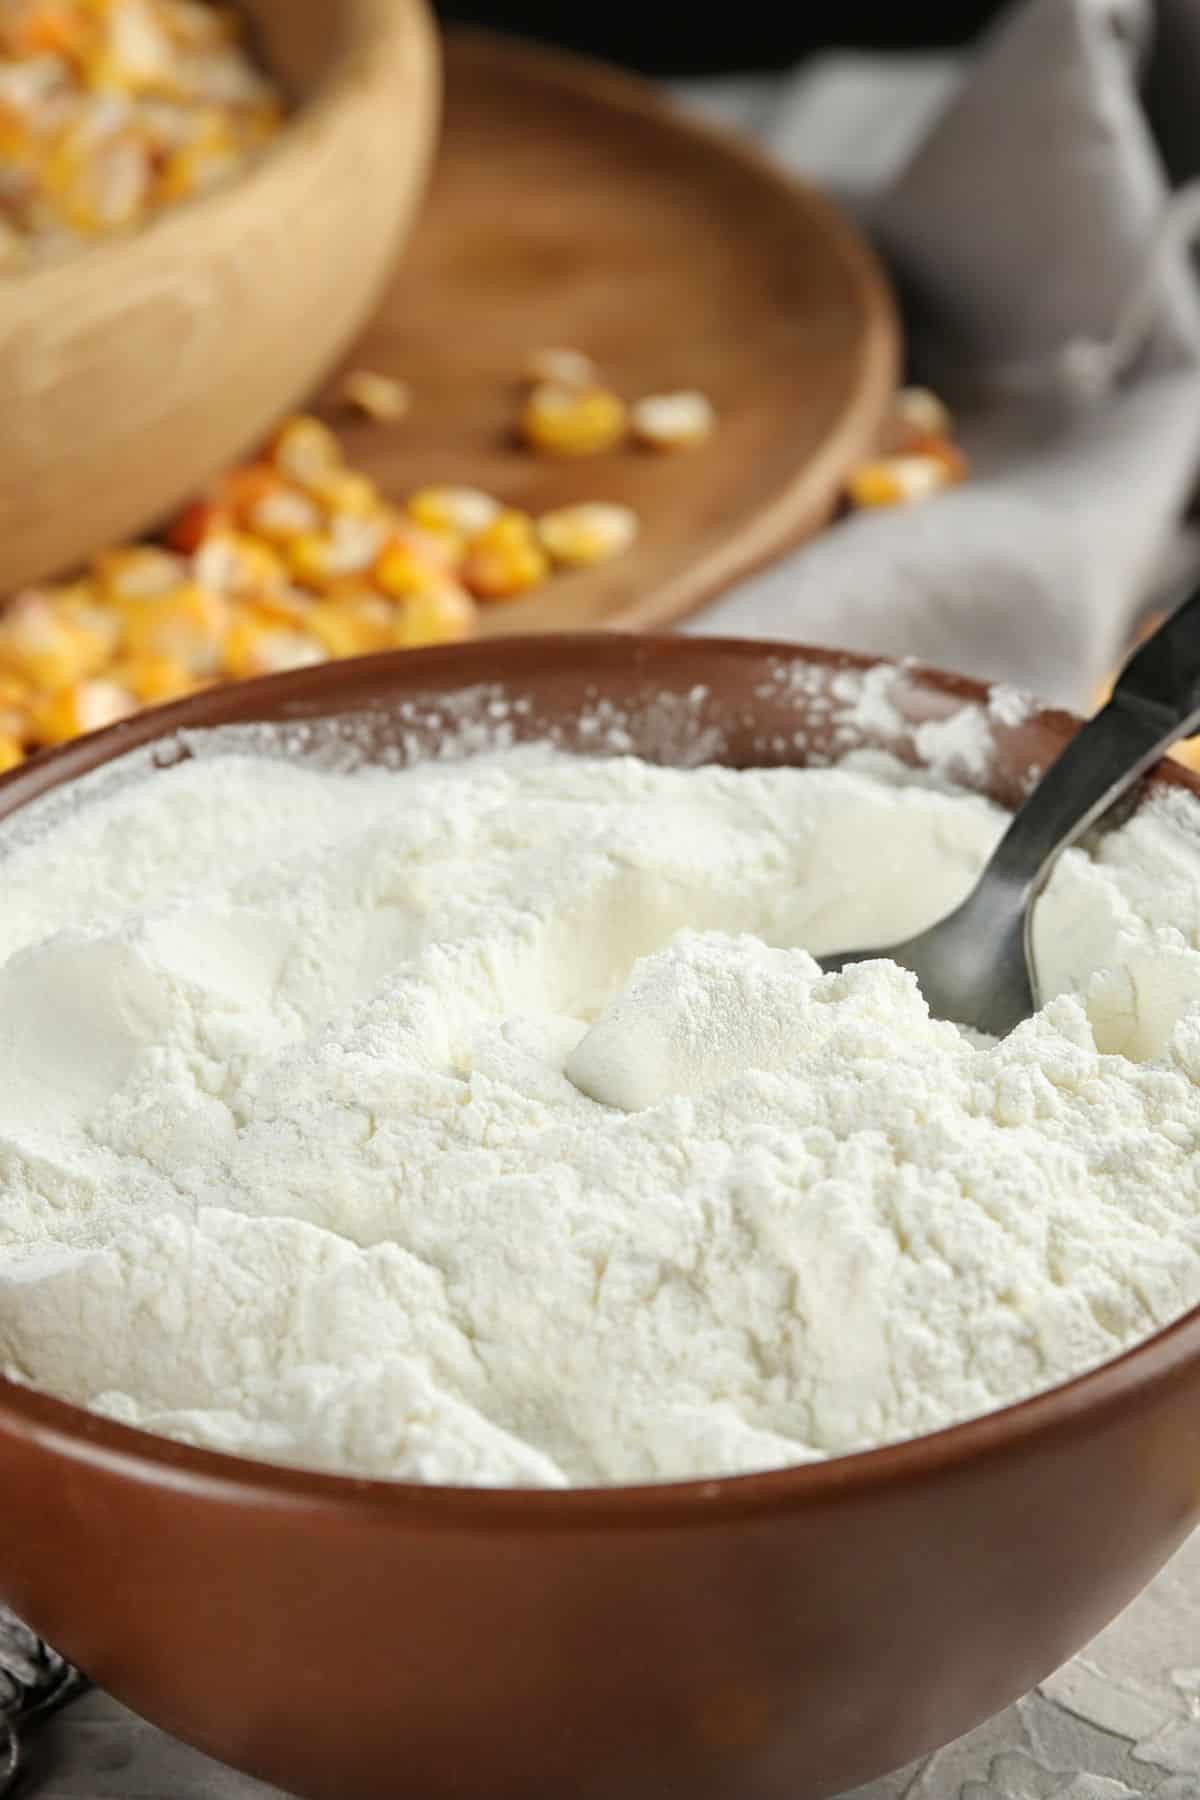 masa harina flour in a bowl